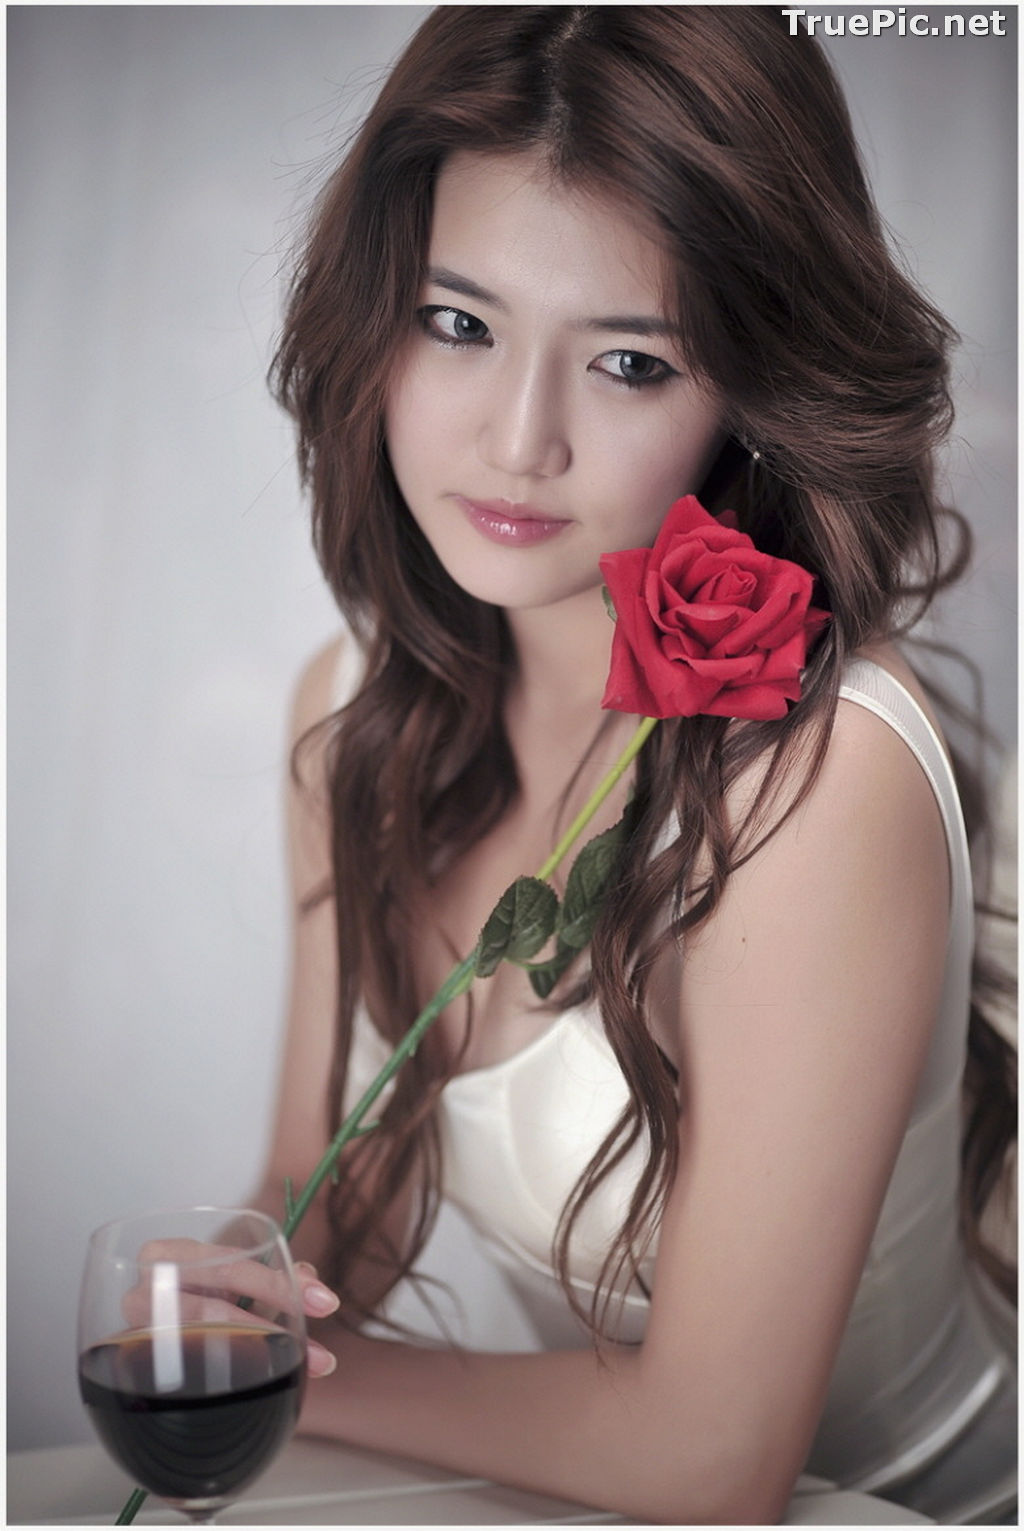 Image Best Beautiful Images Of Korean Racing Queen Han Ga Eun #3 - TruePic.net - Picture-92